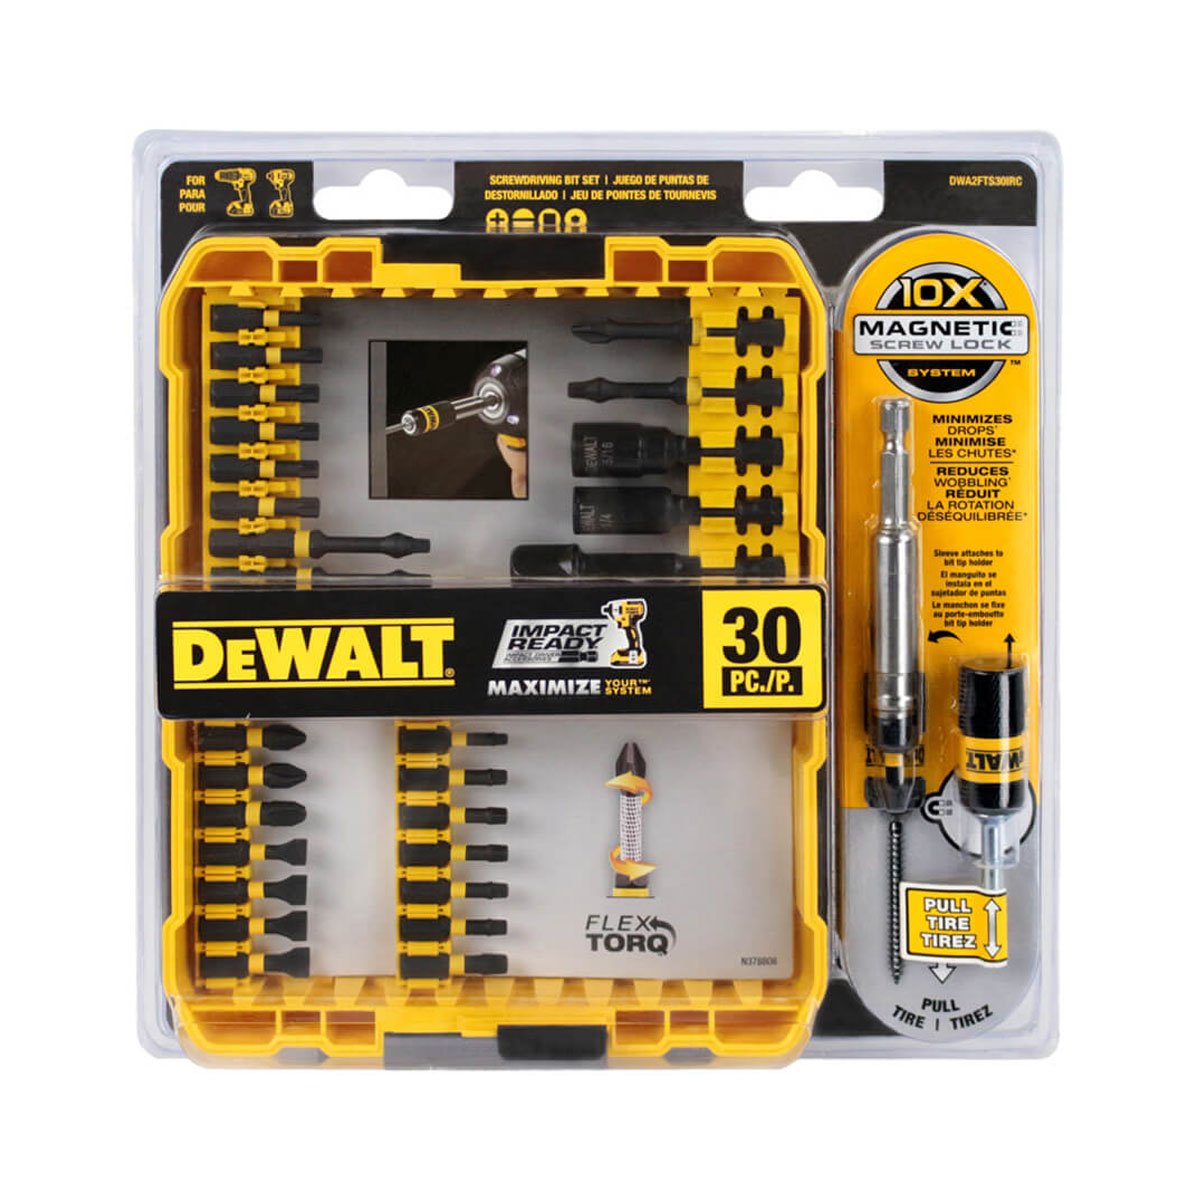 Dewalt DWA2FTS30IRC - 30 PC FLEX TORQ TWR OF 20 - wise-line-tools